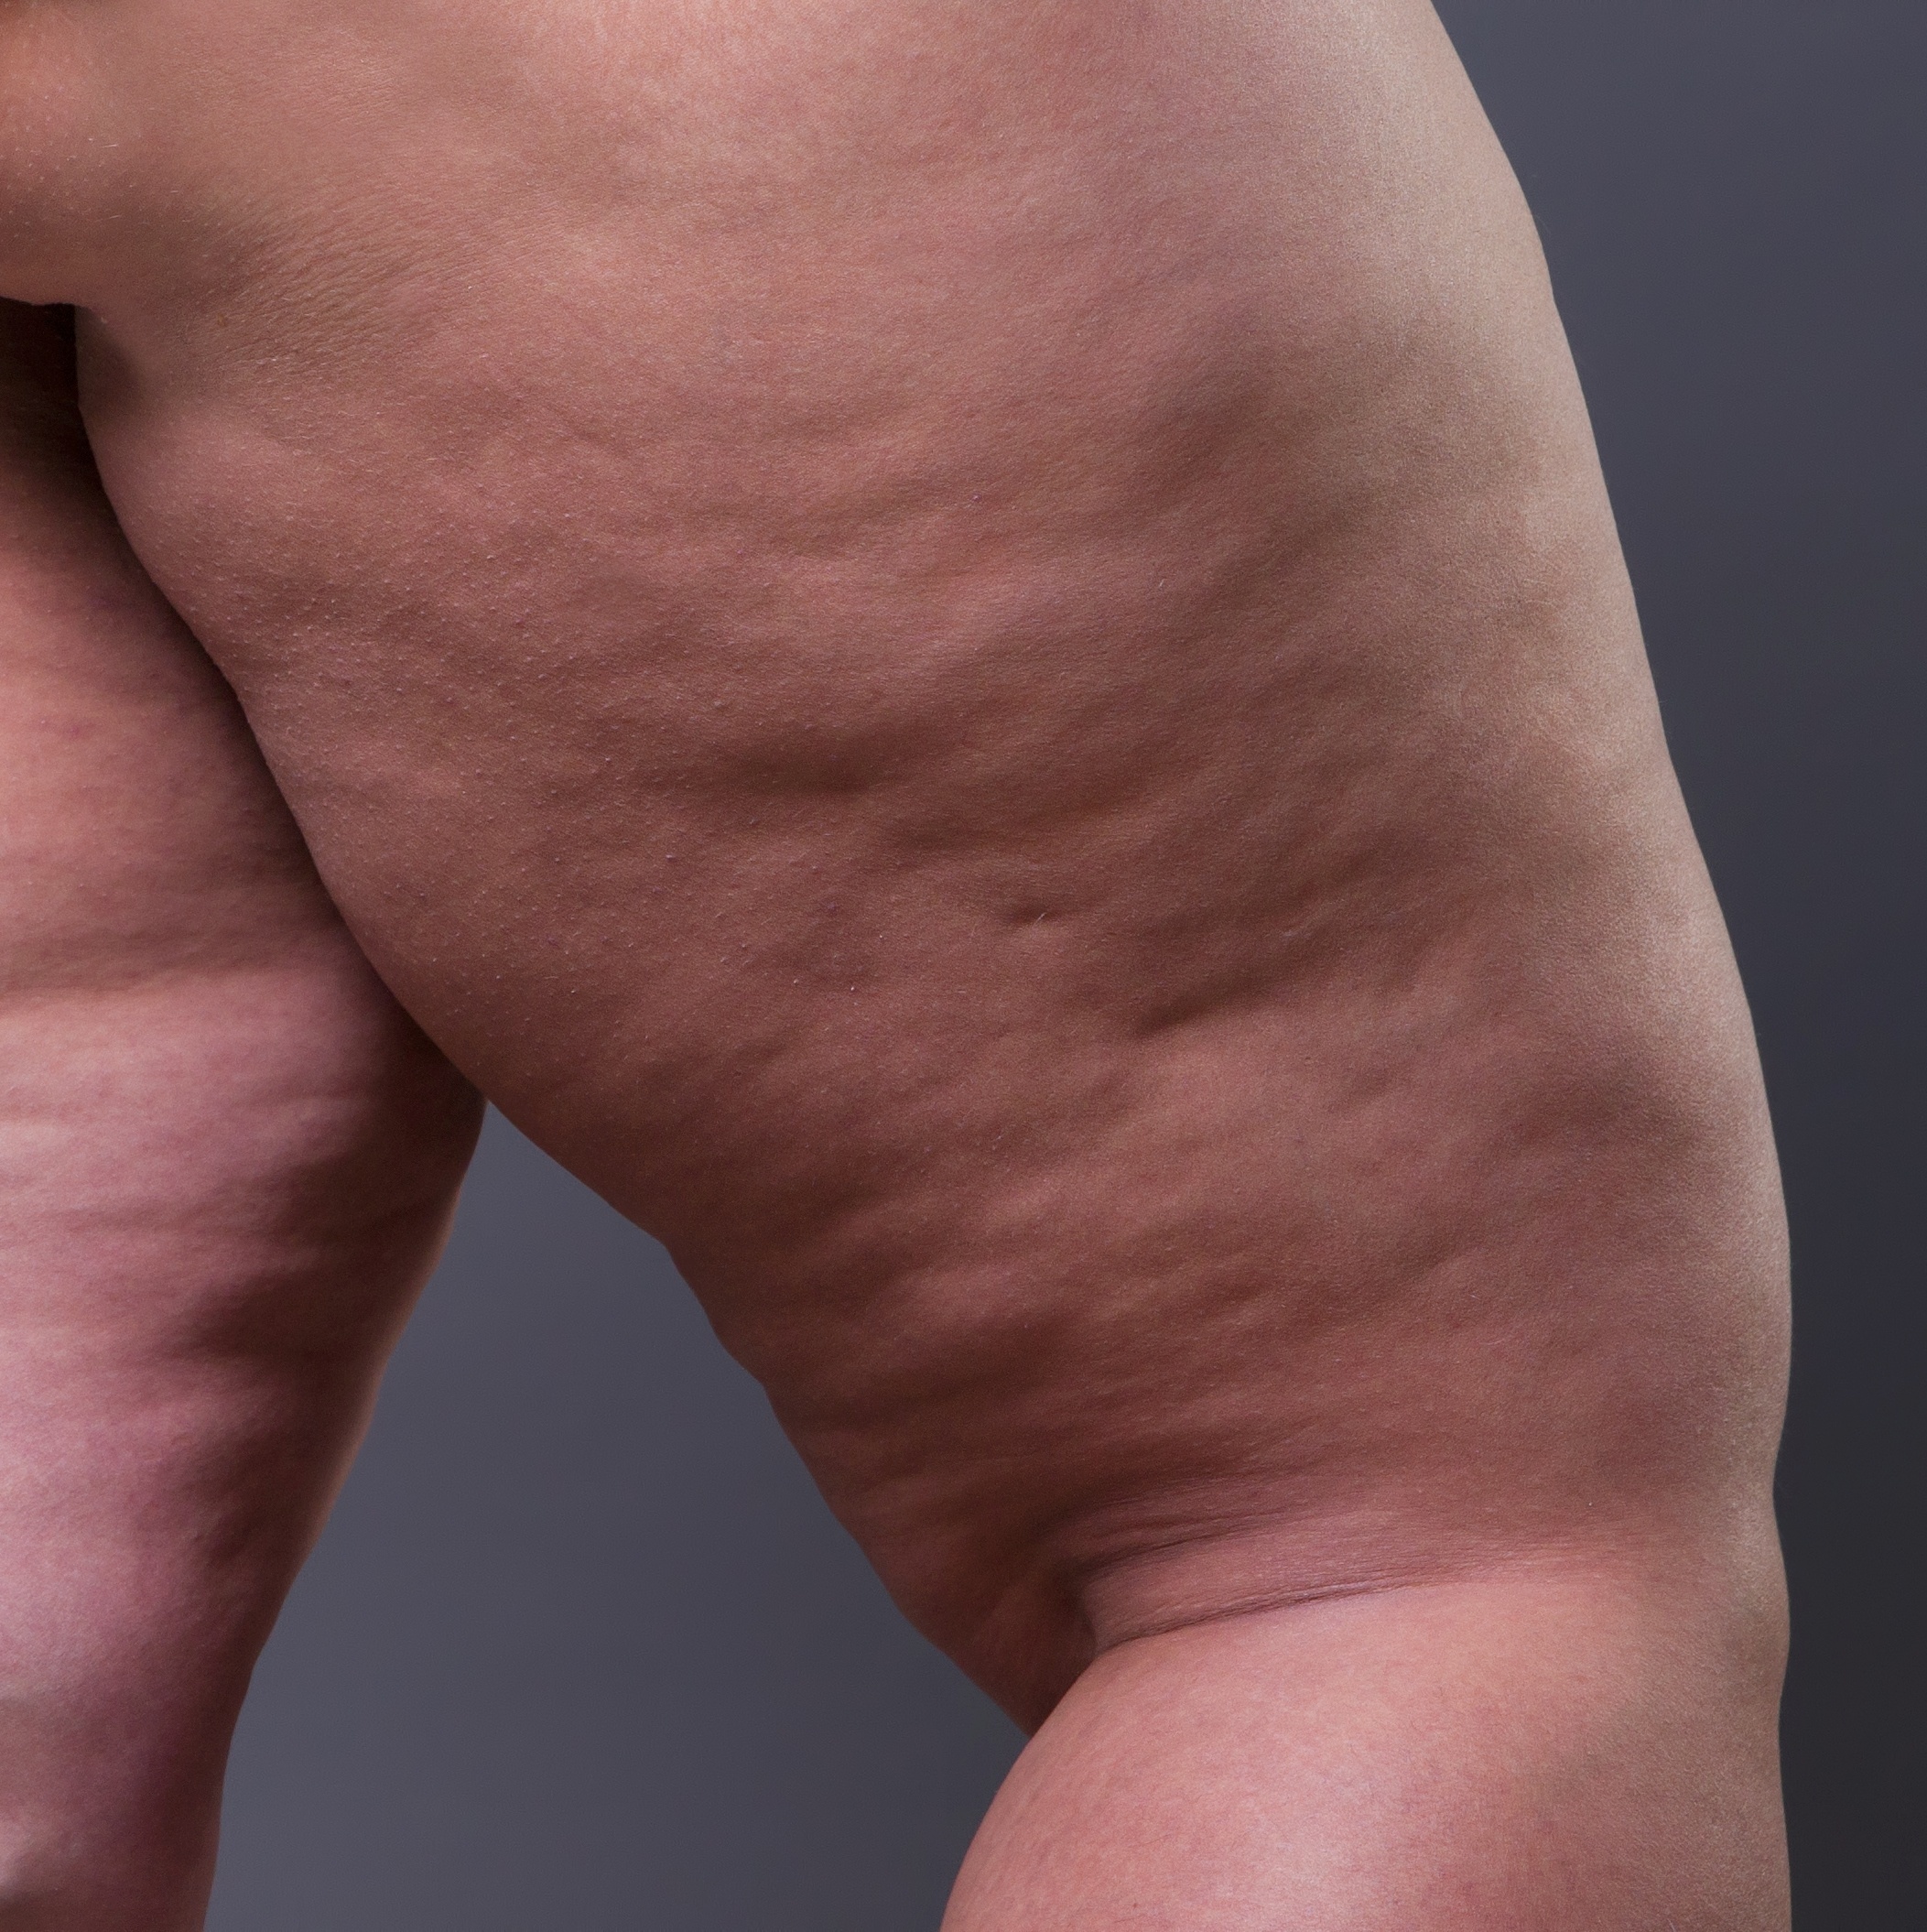 O lipedema é uma inflamação de baixo grau do tecido gorduroso. Lipedema não  é gordura.